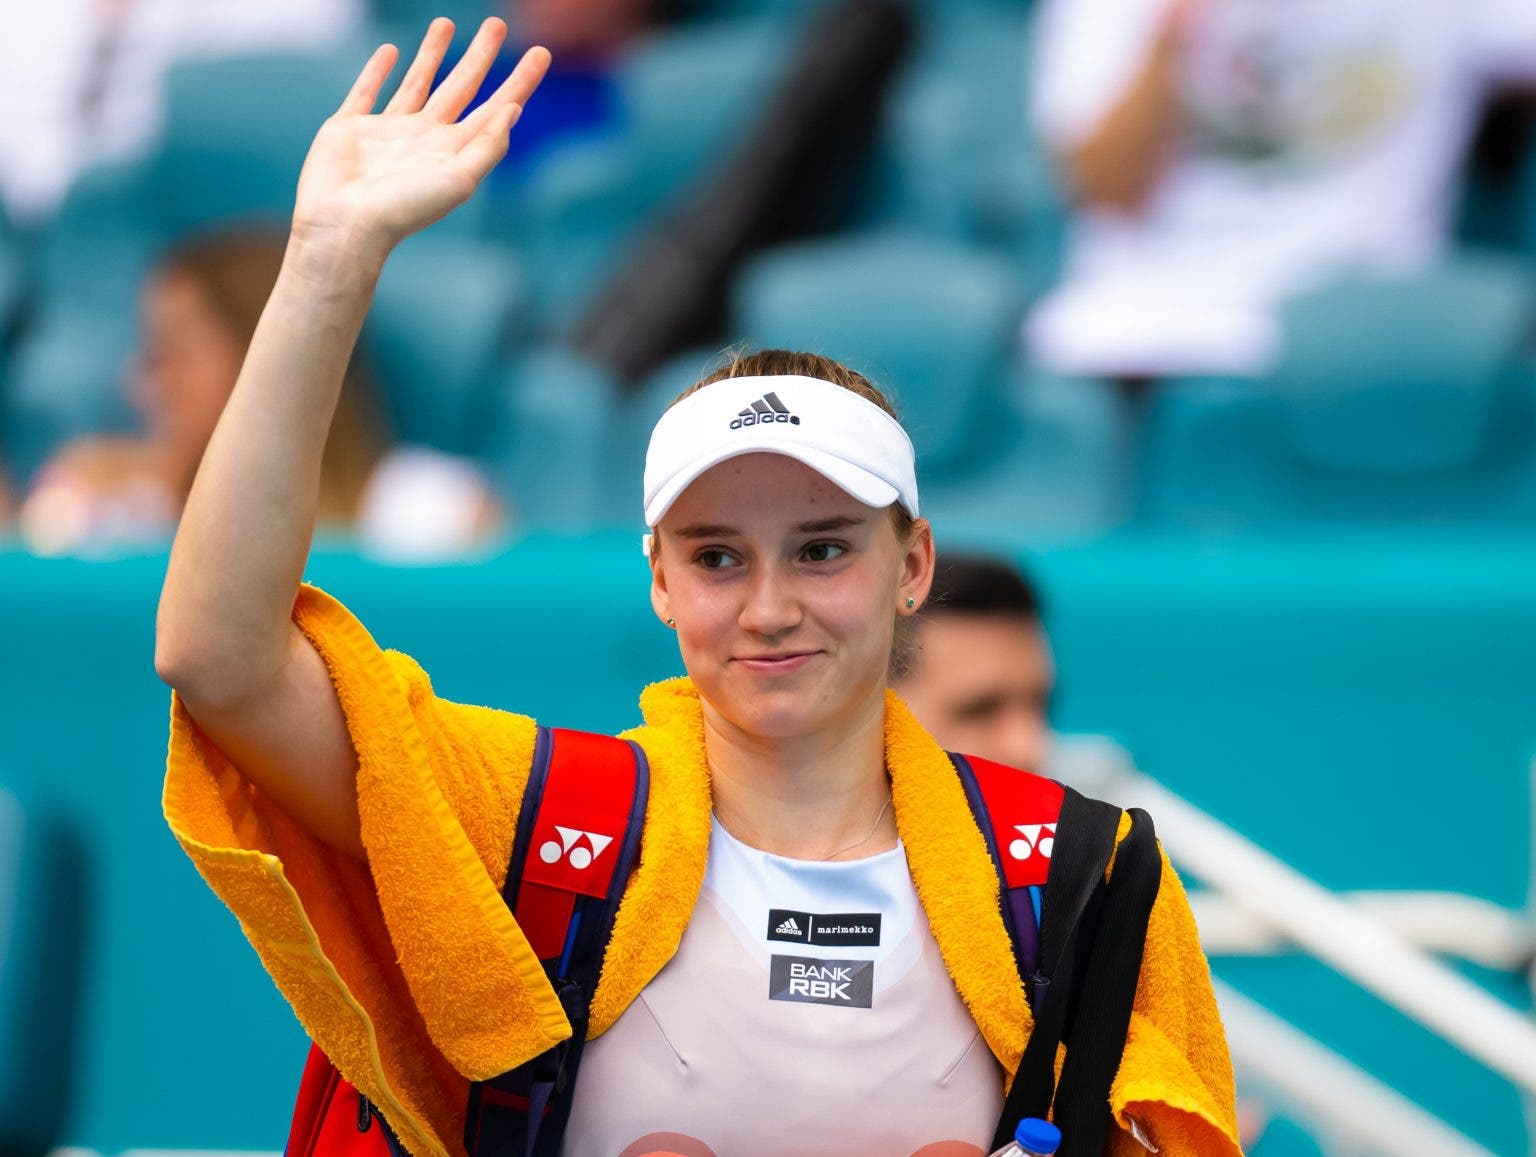 Alexandrova wins first triple-tiebreak Wimbledon match in Open Era